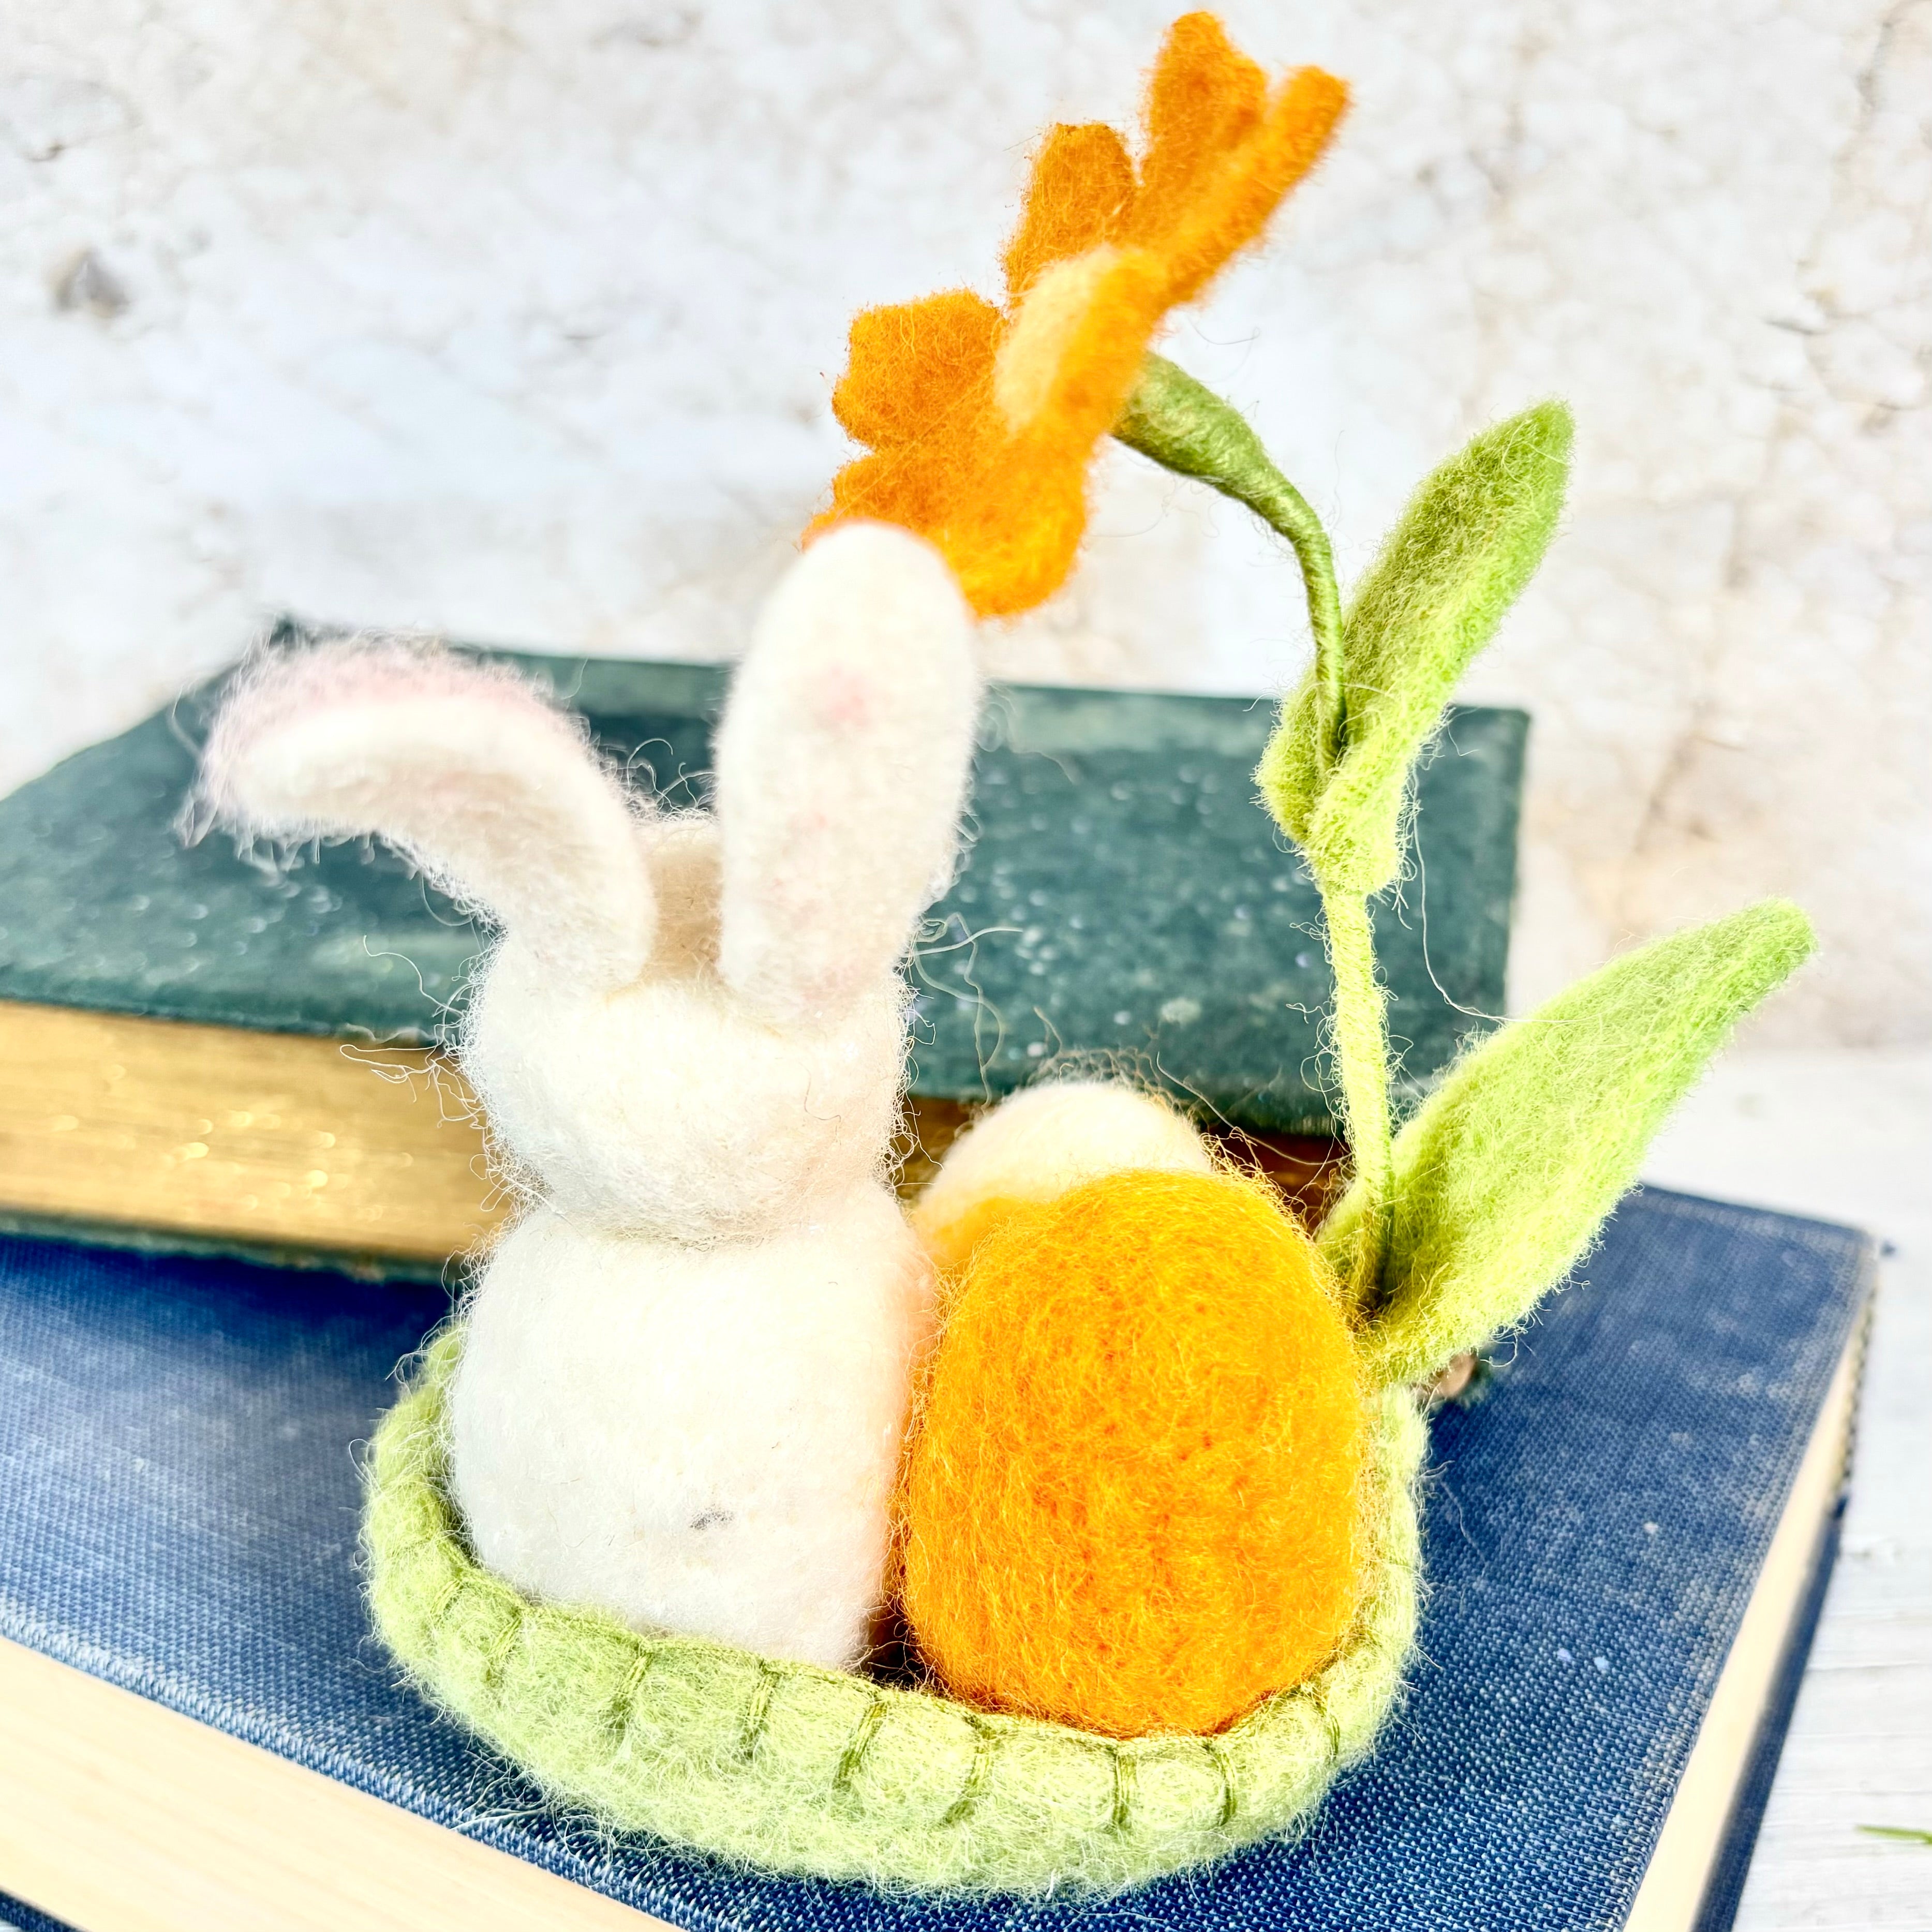 Felt White Bunny in Felt Green Basket with Eggs